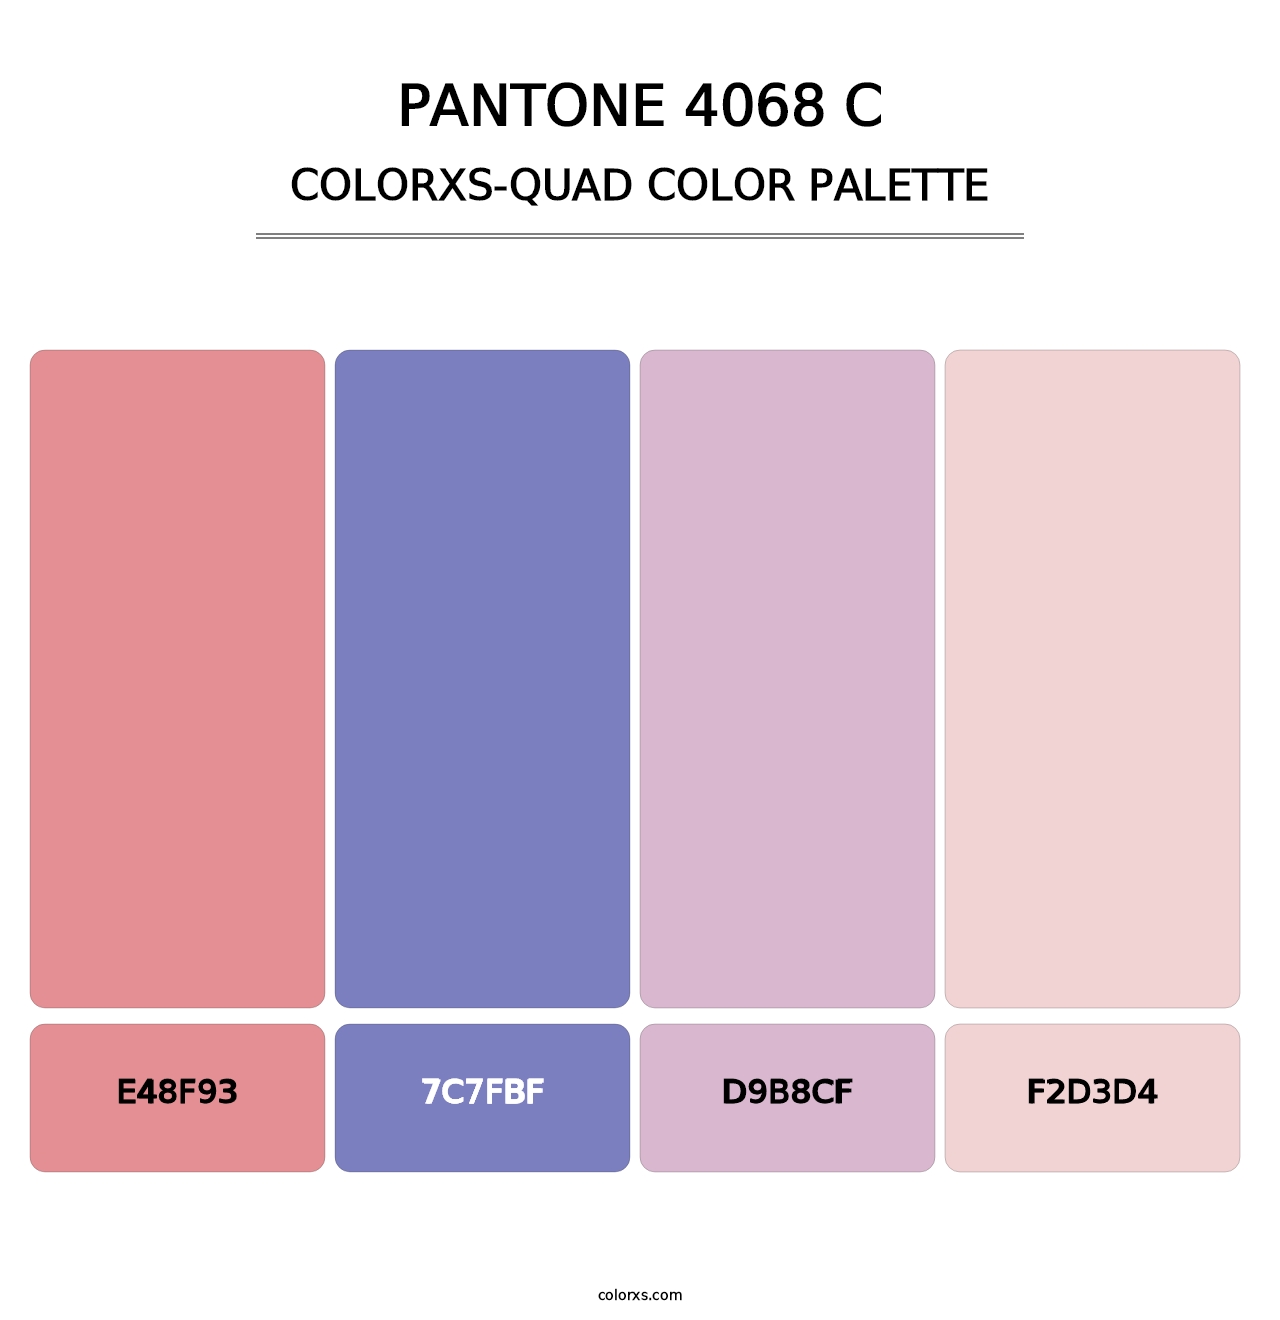 PANTONE 4068 C - Colorxs Quad Palette